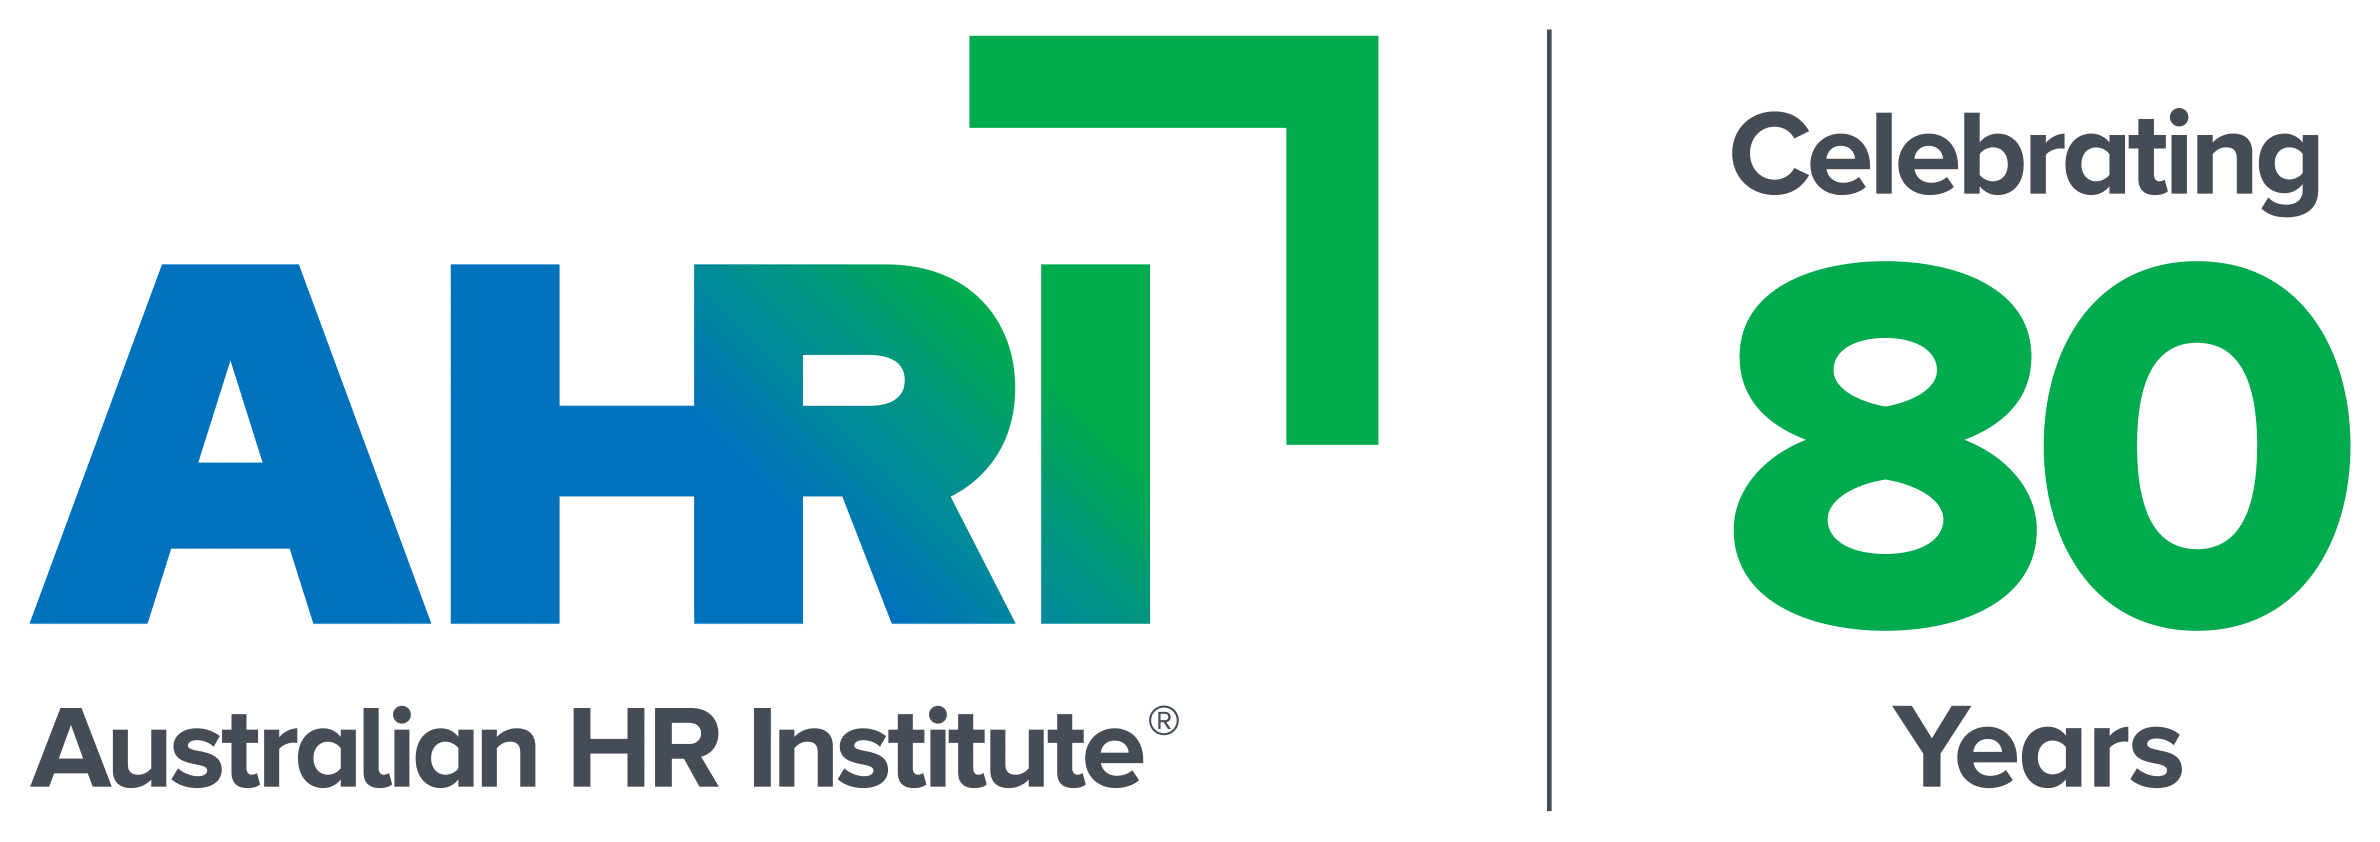 澳大利亚HR Institute